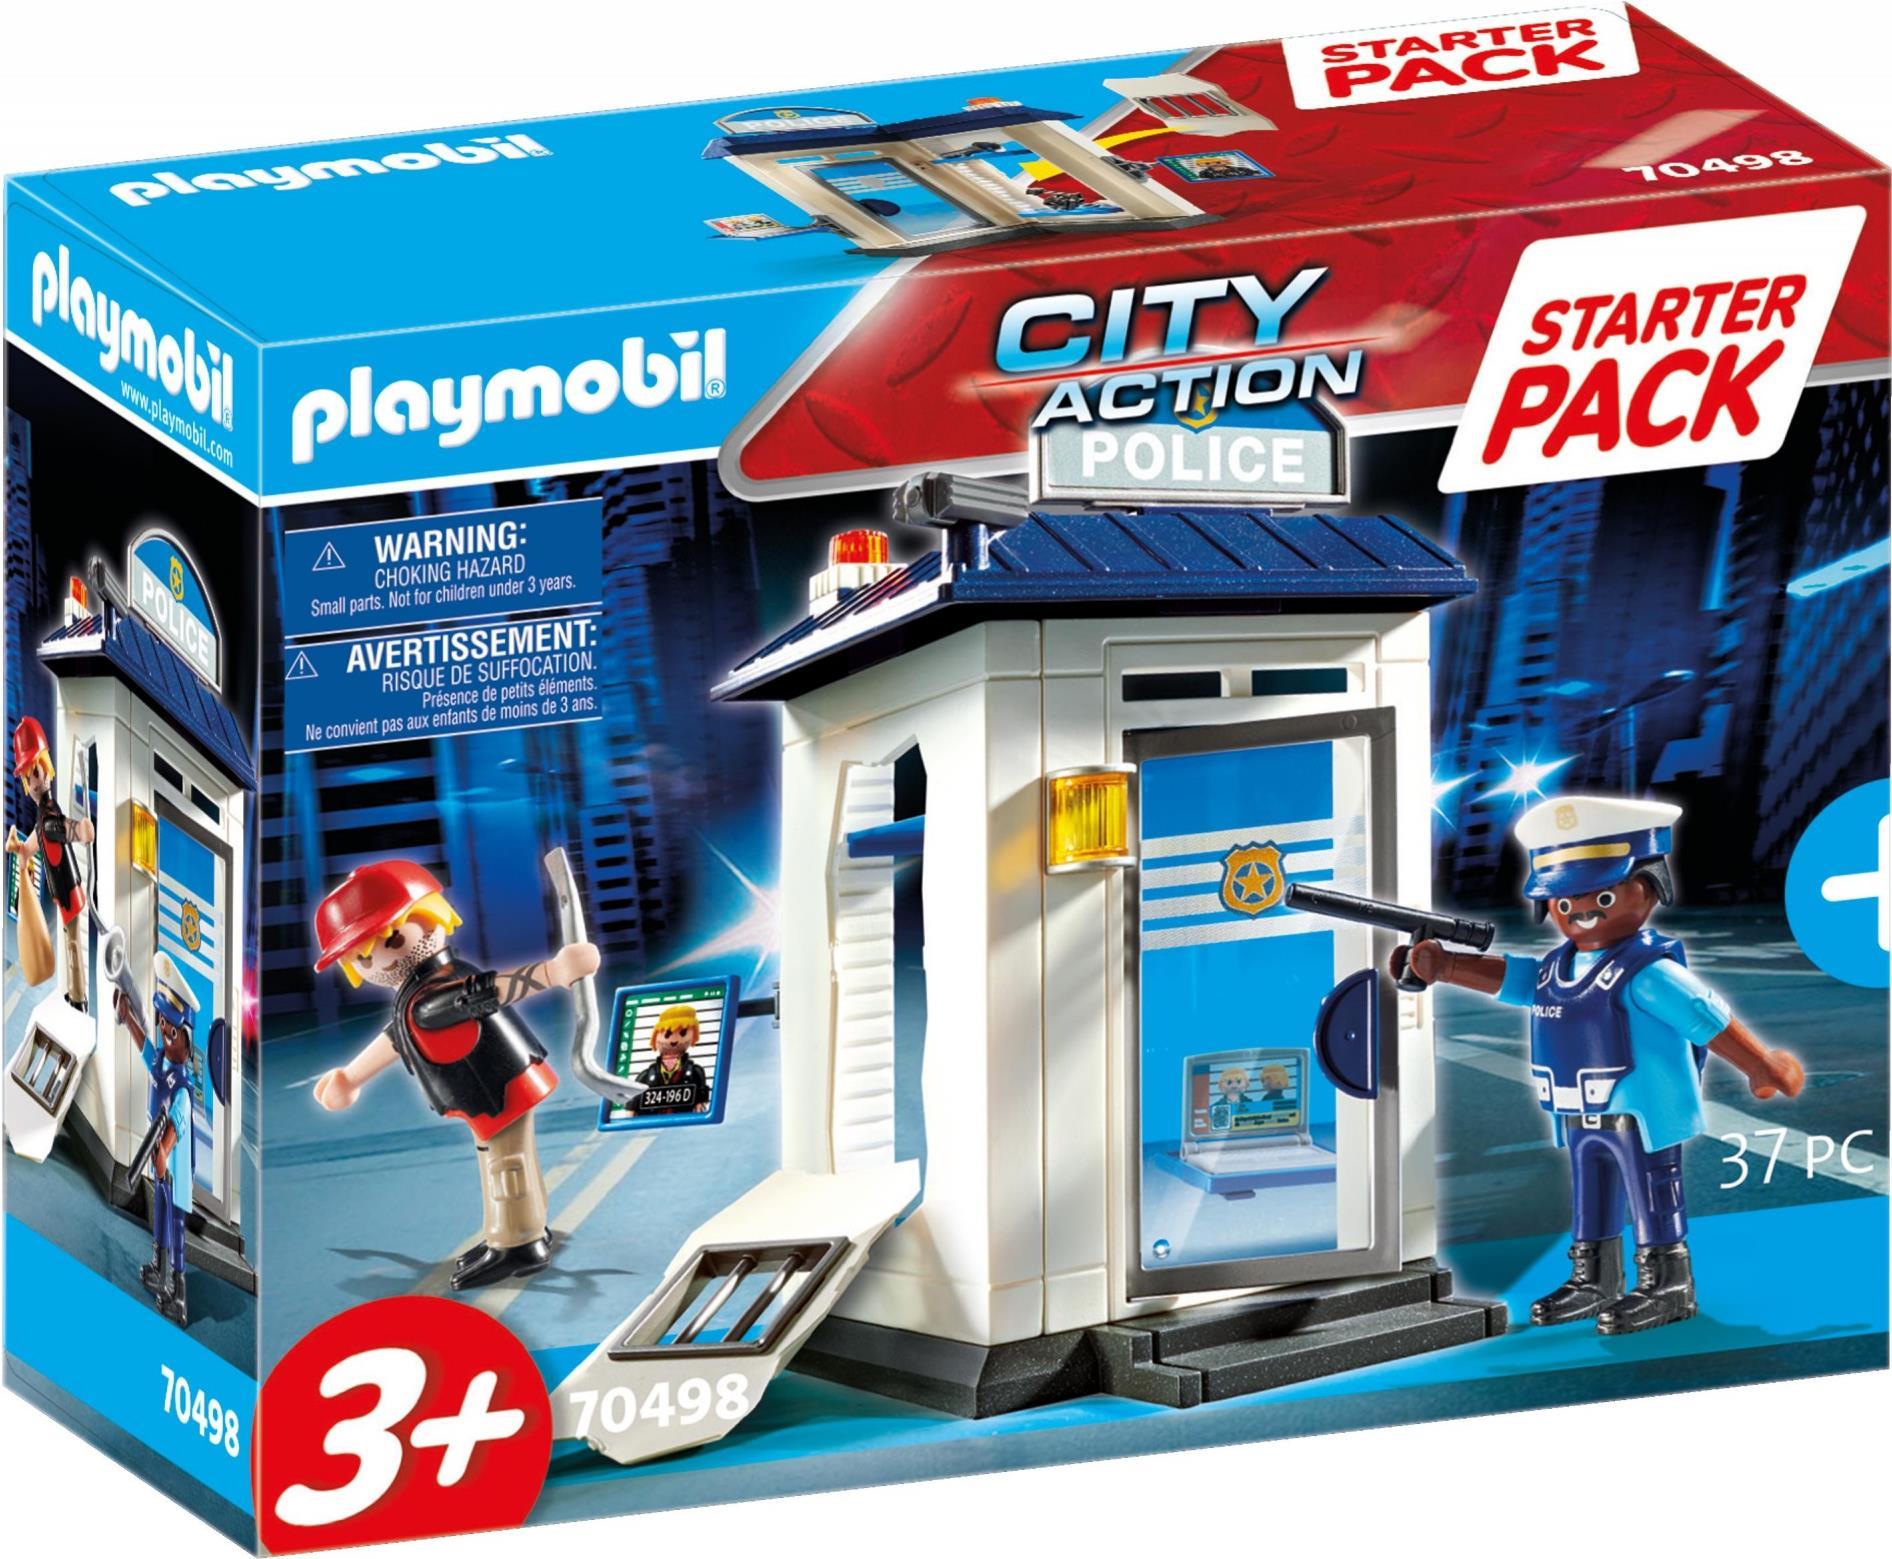 Playmobil City Action Starter Pack Polizei - Junge/Mädchen - 3 Jahr(e) - Kunststoff - Mehrfarben (70498)